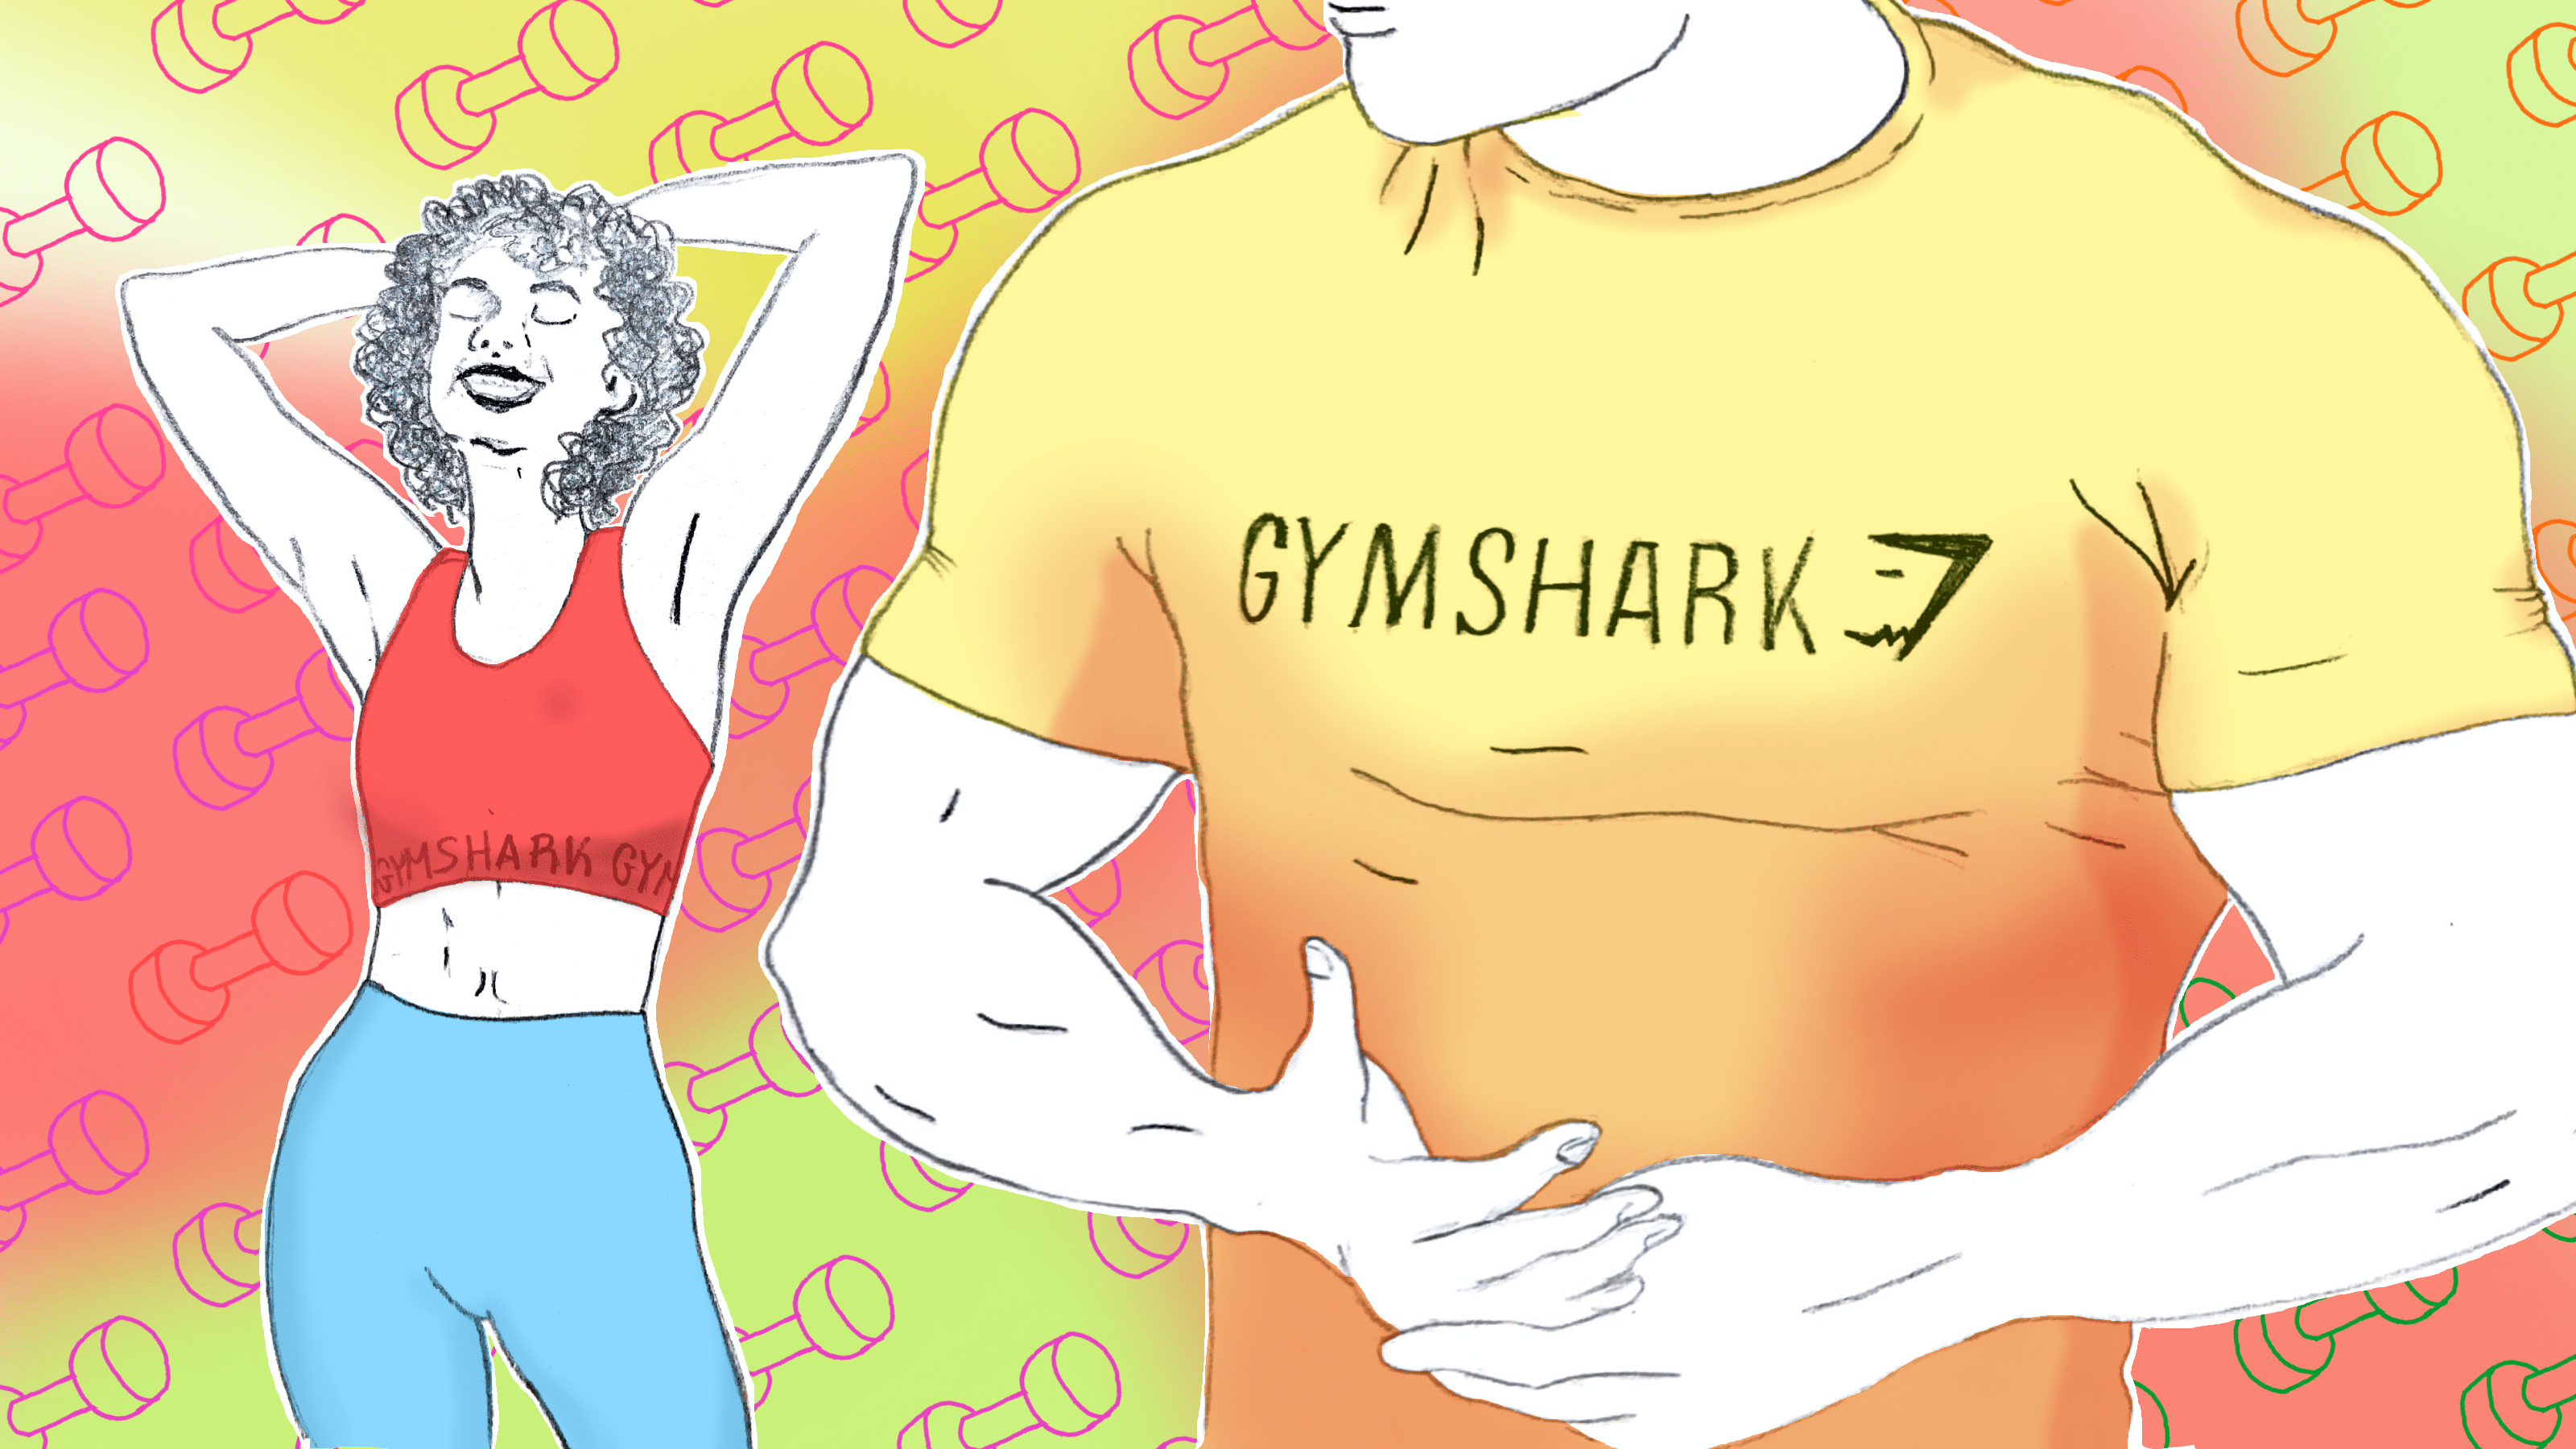 Gymshark png images